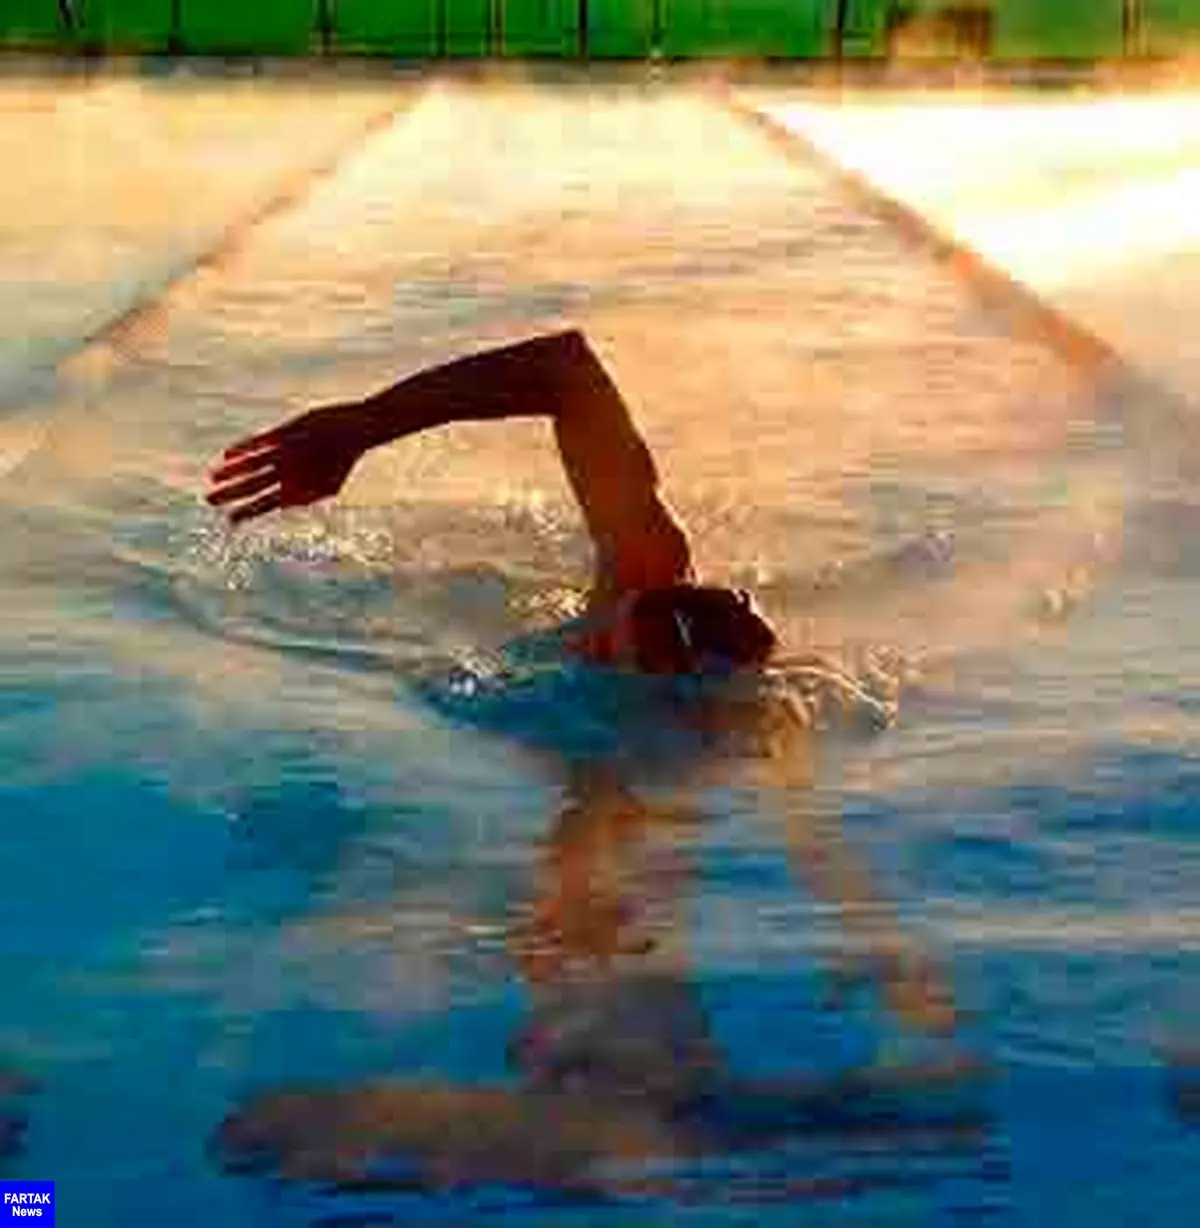  شنا کردن یا دویدن کدام یک در کاهش وزن موثرتر است؟